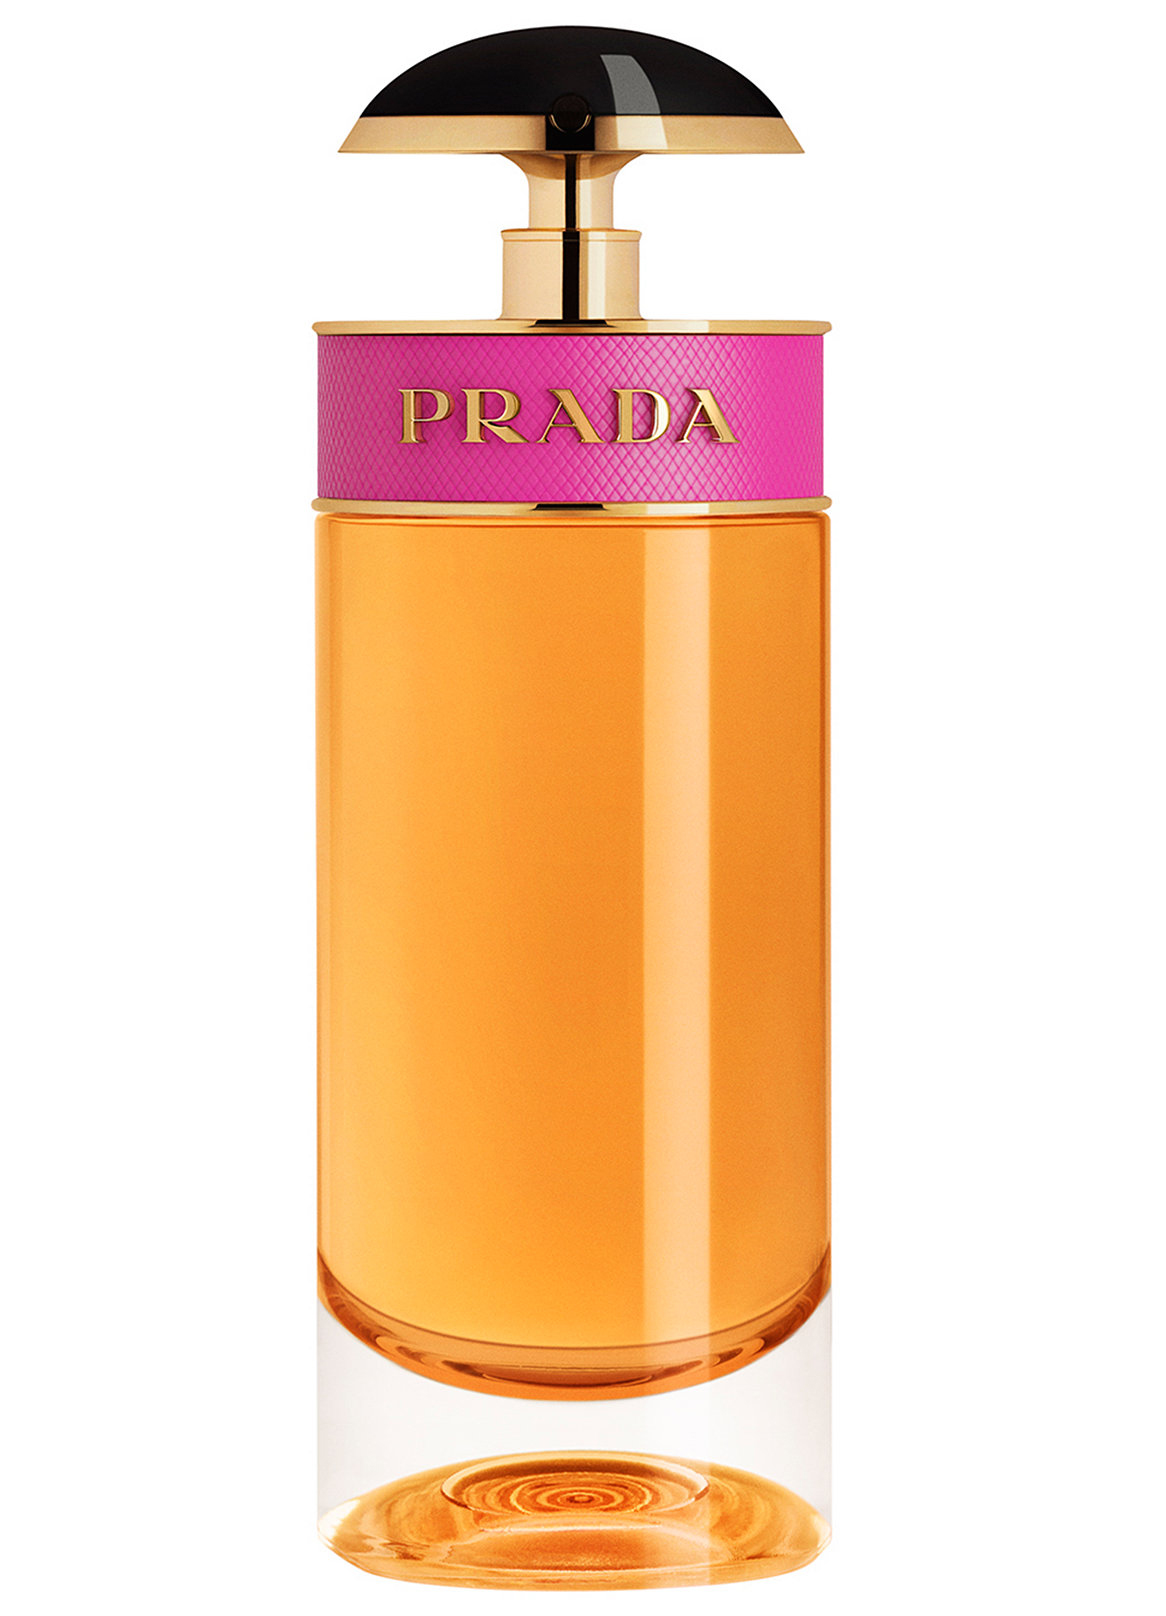 Купить Парфюмерная вода Prada, Prada Candy 50.0ml, Италия